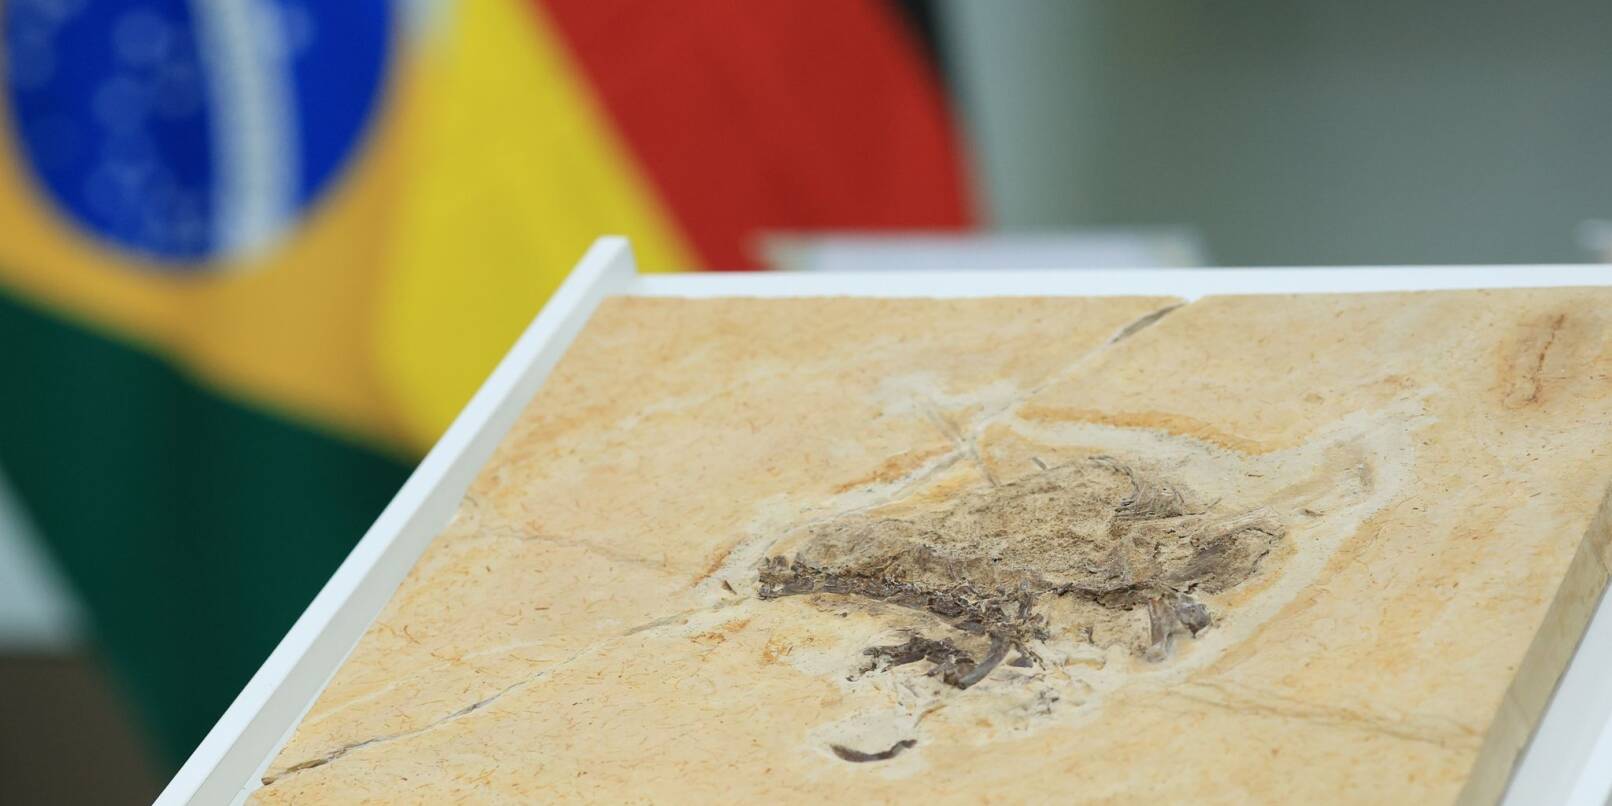 Das Dinosaurier-Fossil des Ubirajara jubatus ist bei einer offiziellen Übergabe ausgestellt.